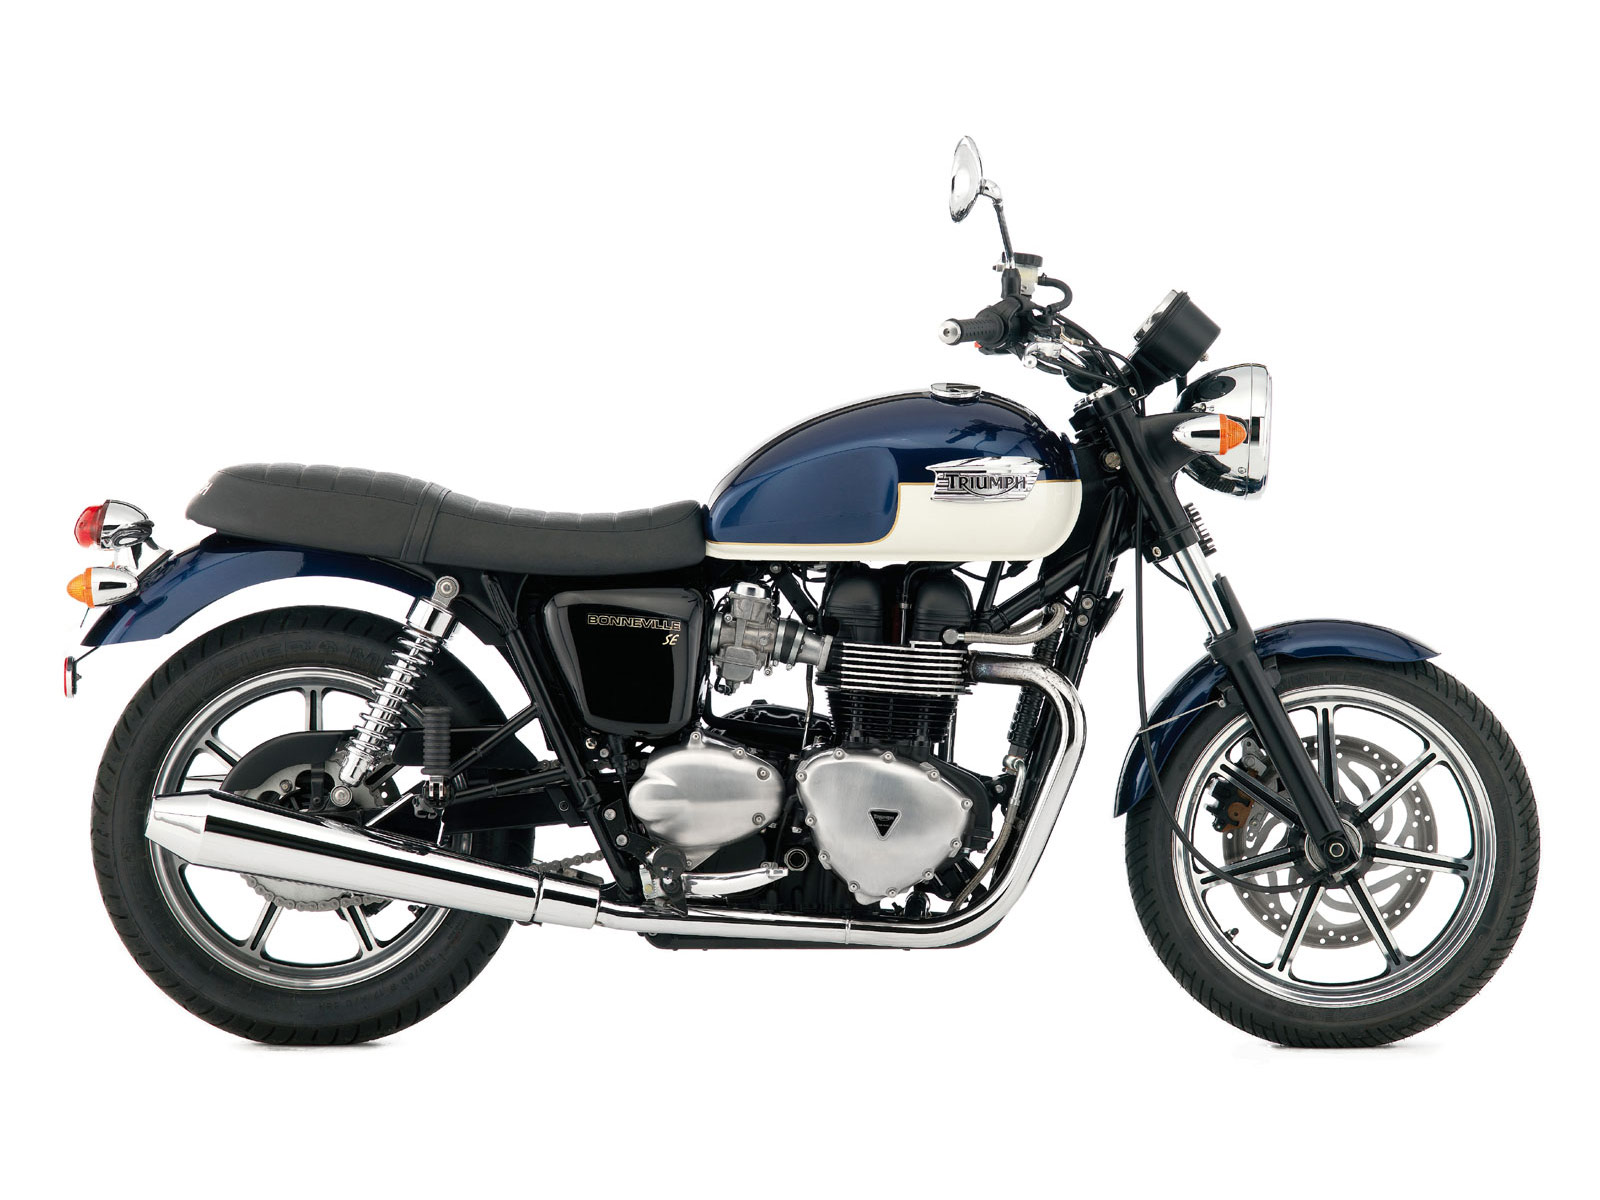 2010 Vintage Triumph Motorcycles Bonneville SE | Motorcycle Case